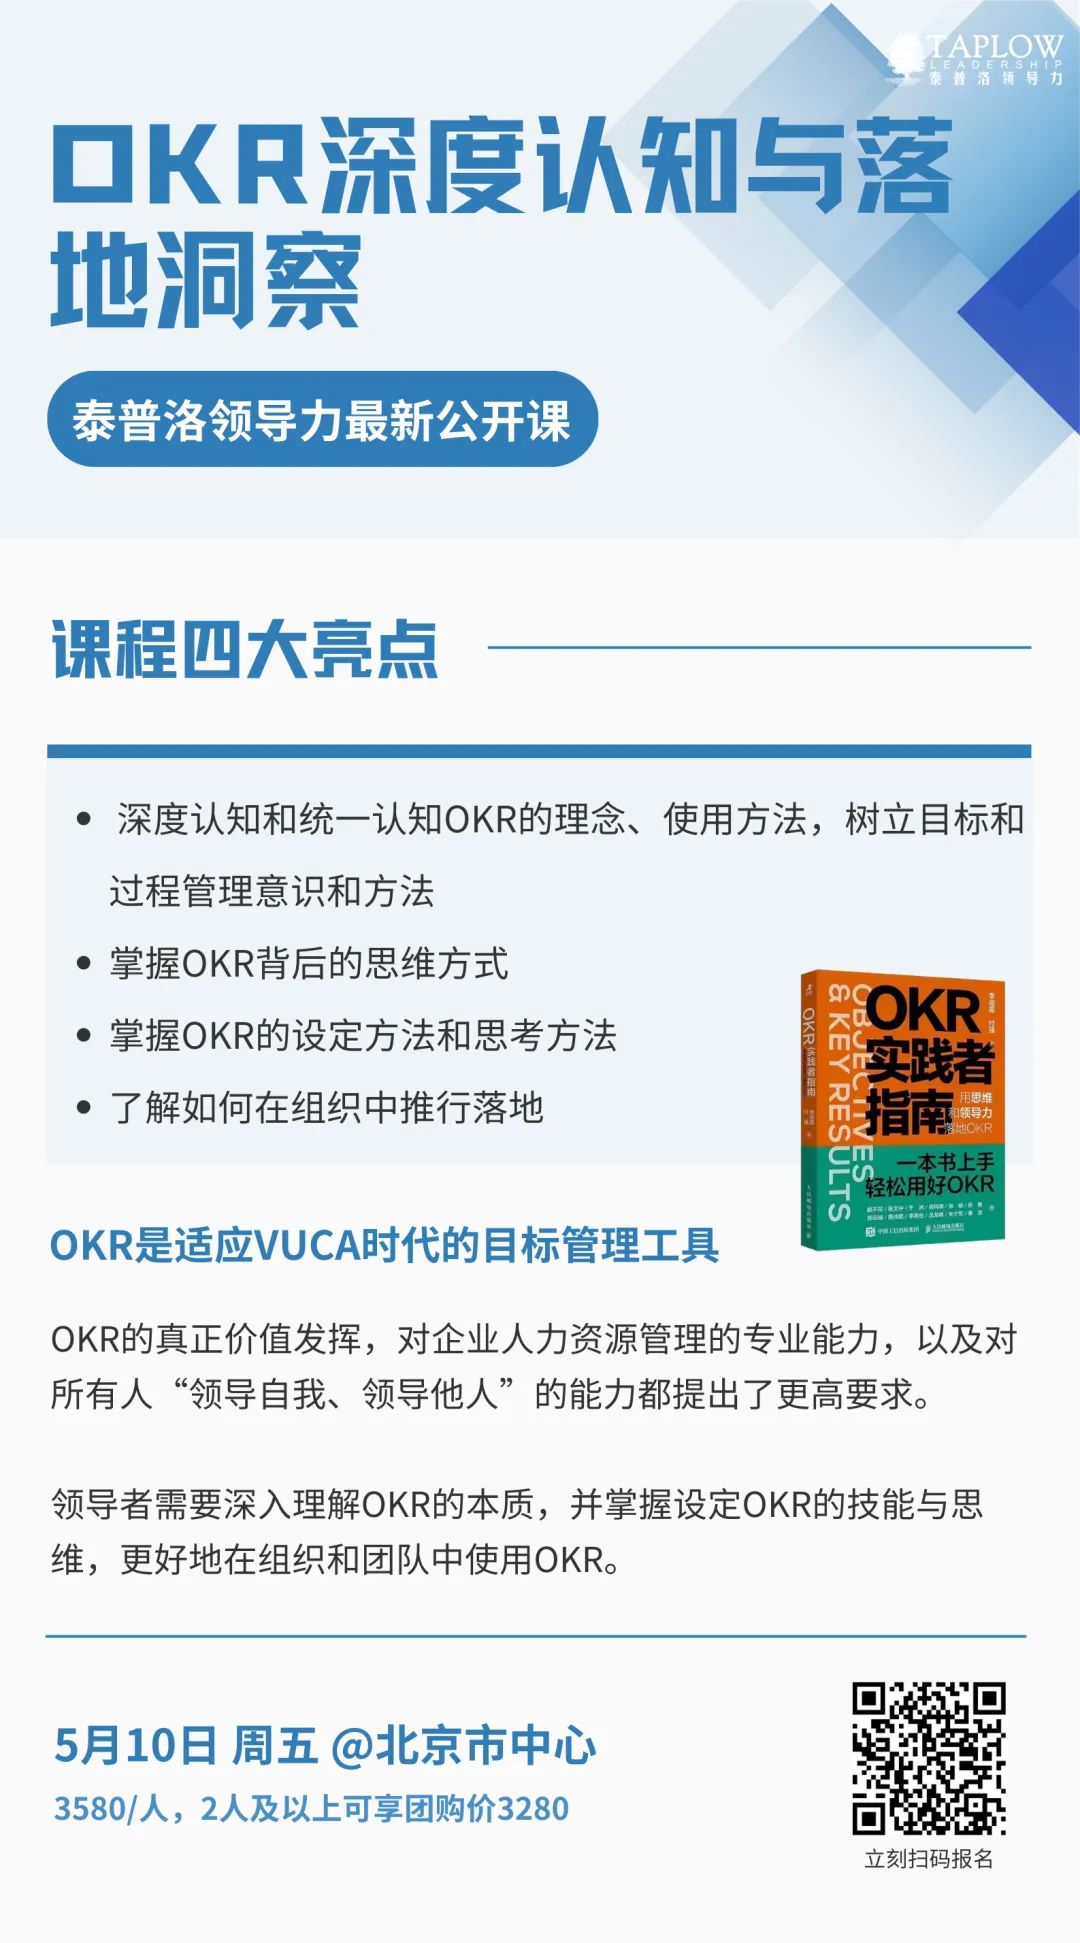 最新北京公开课 |「OKR深度认知与落地洞察」开启报名